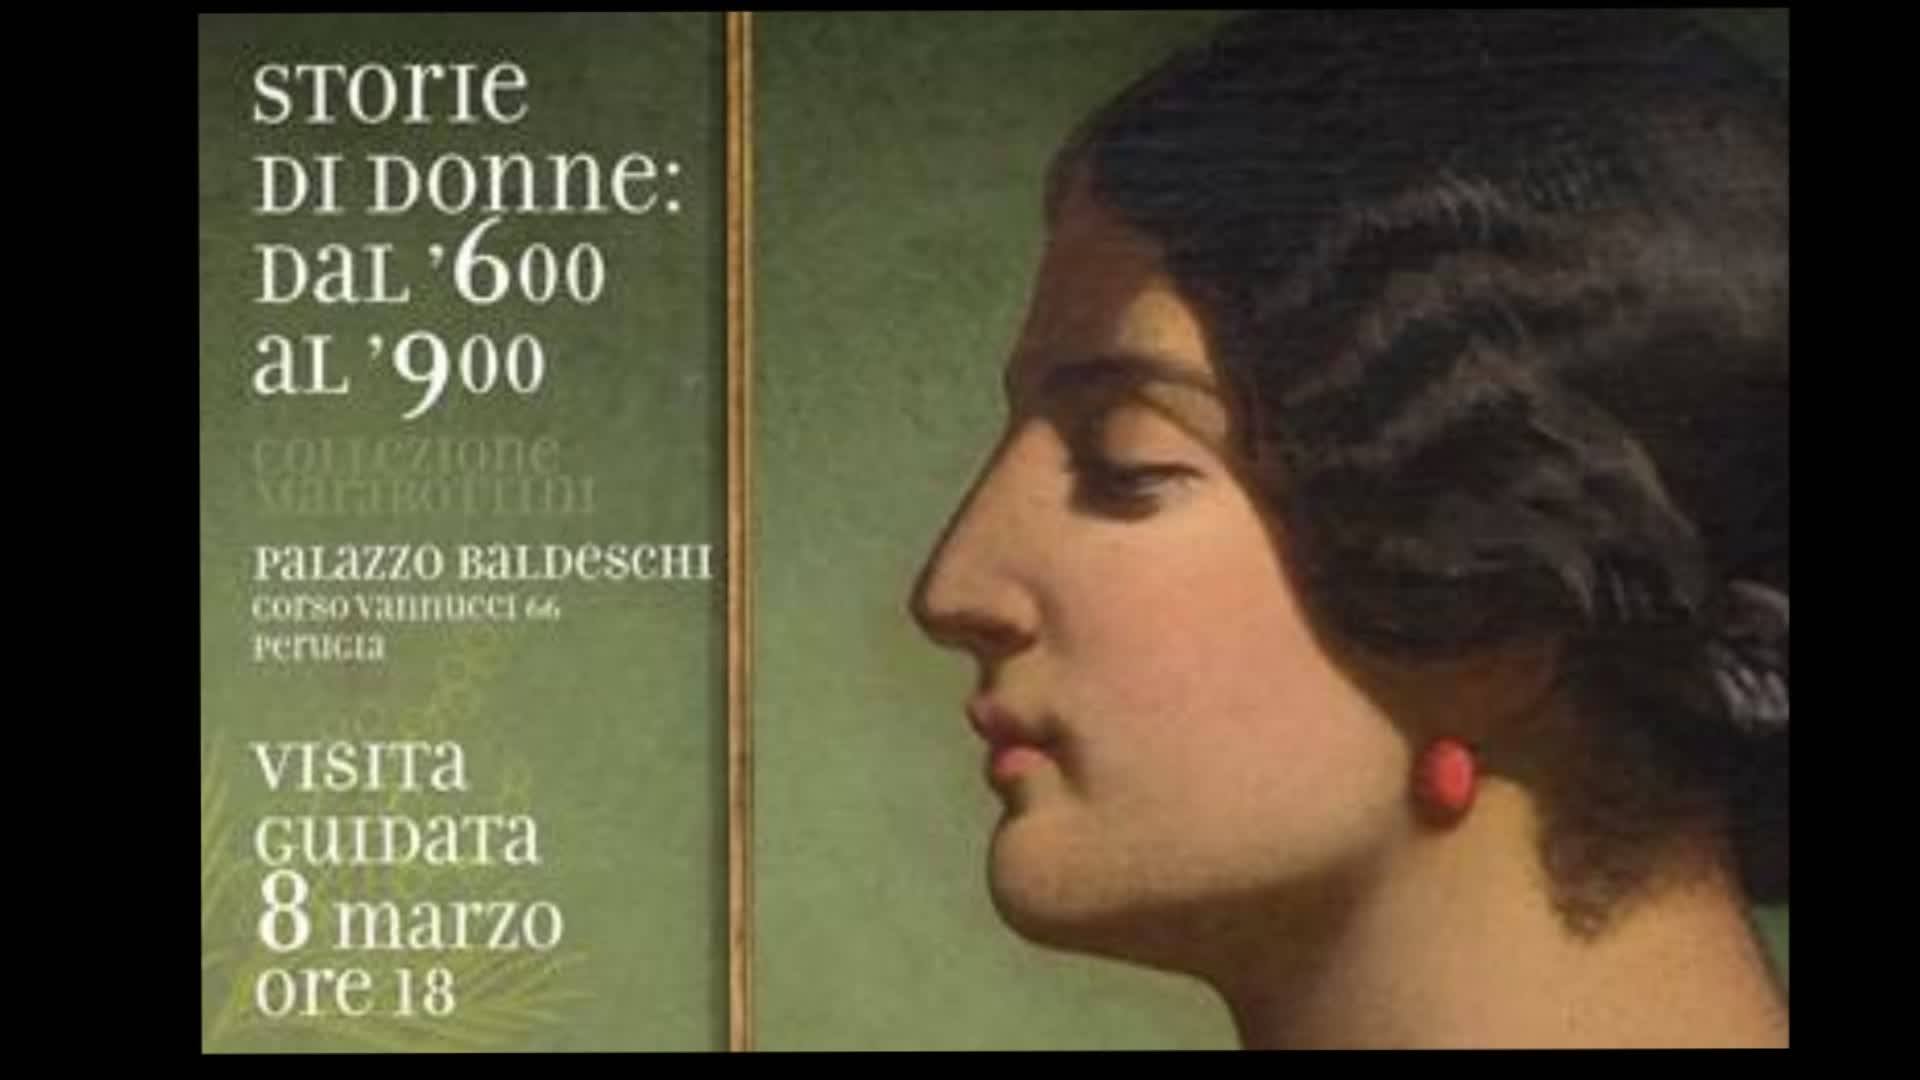 8 Marzo, a Palazzo Baldeschi "Storie di donne: dal ‘600 all’800"